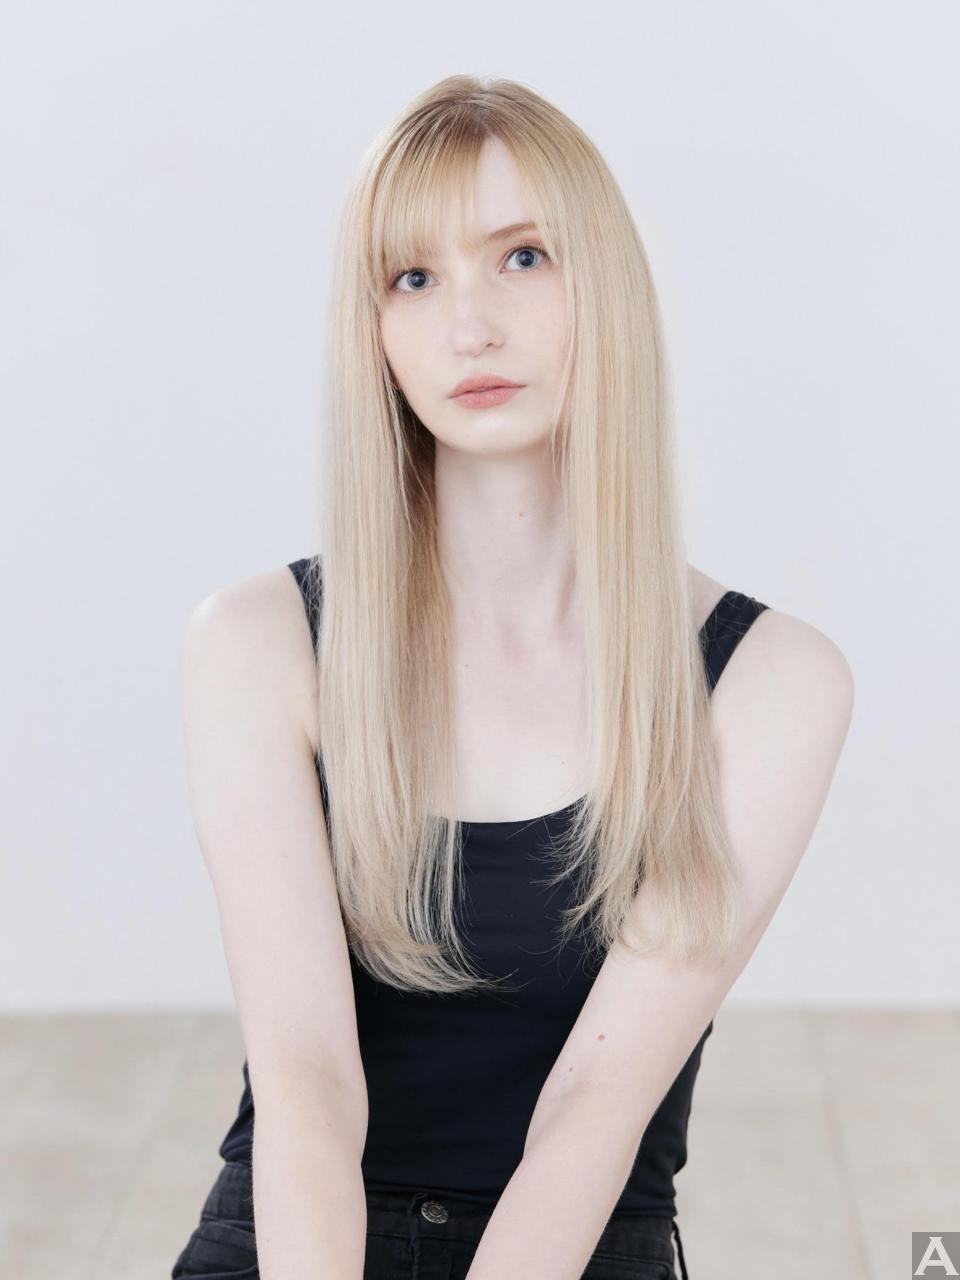 東京外国人モデル事務所アクアモデル所属の白人モデルのキャシー